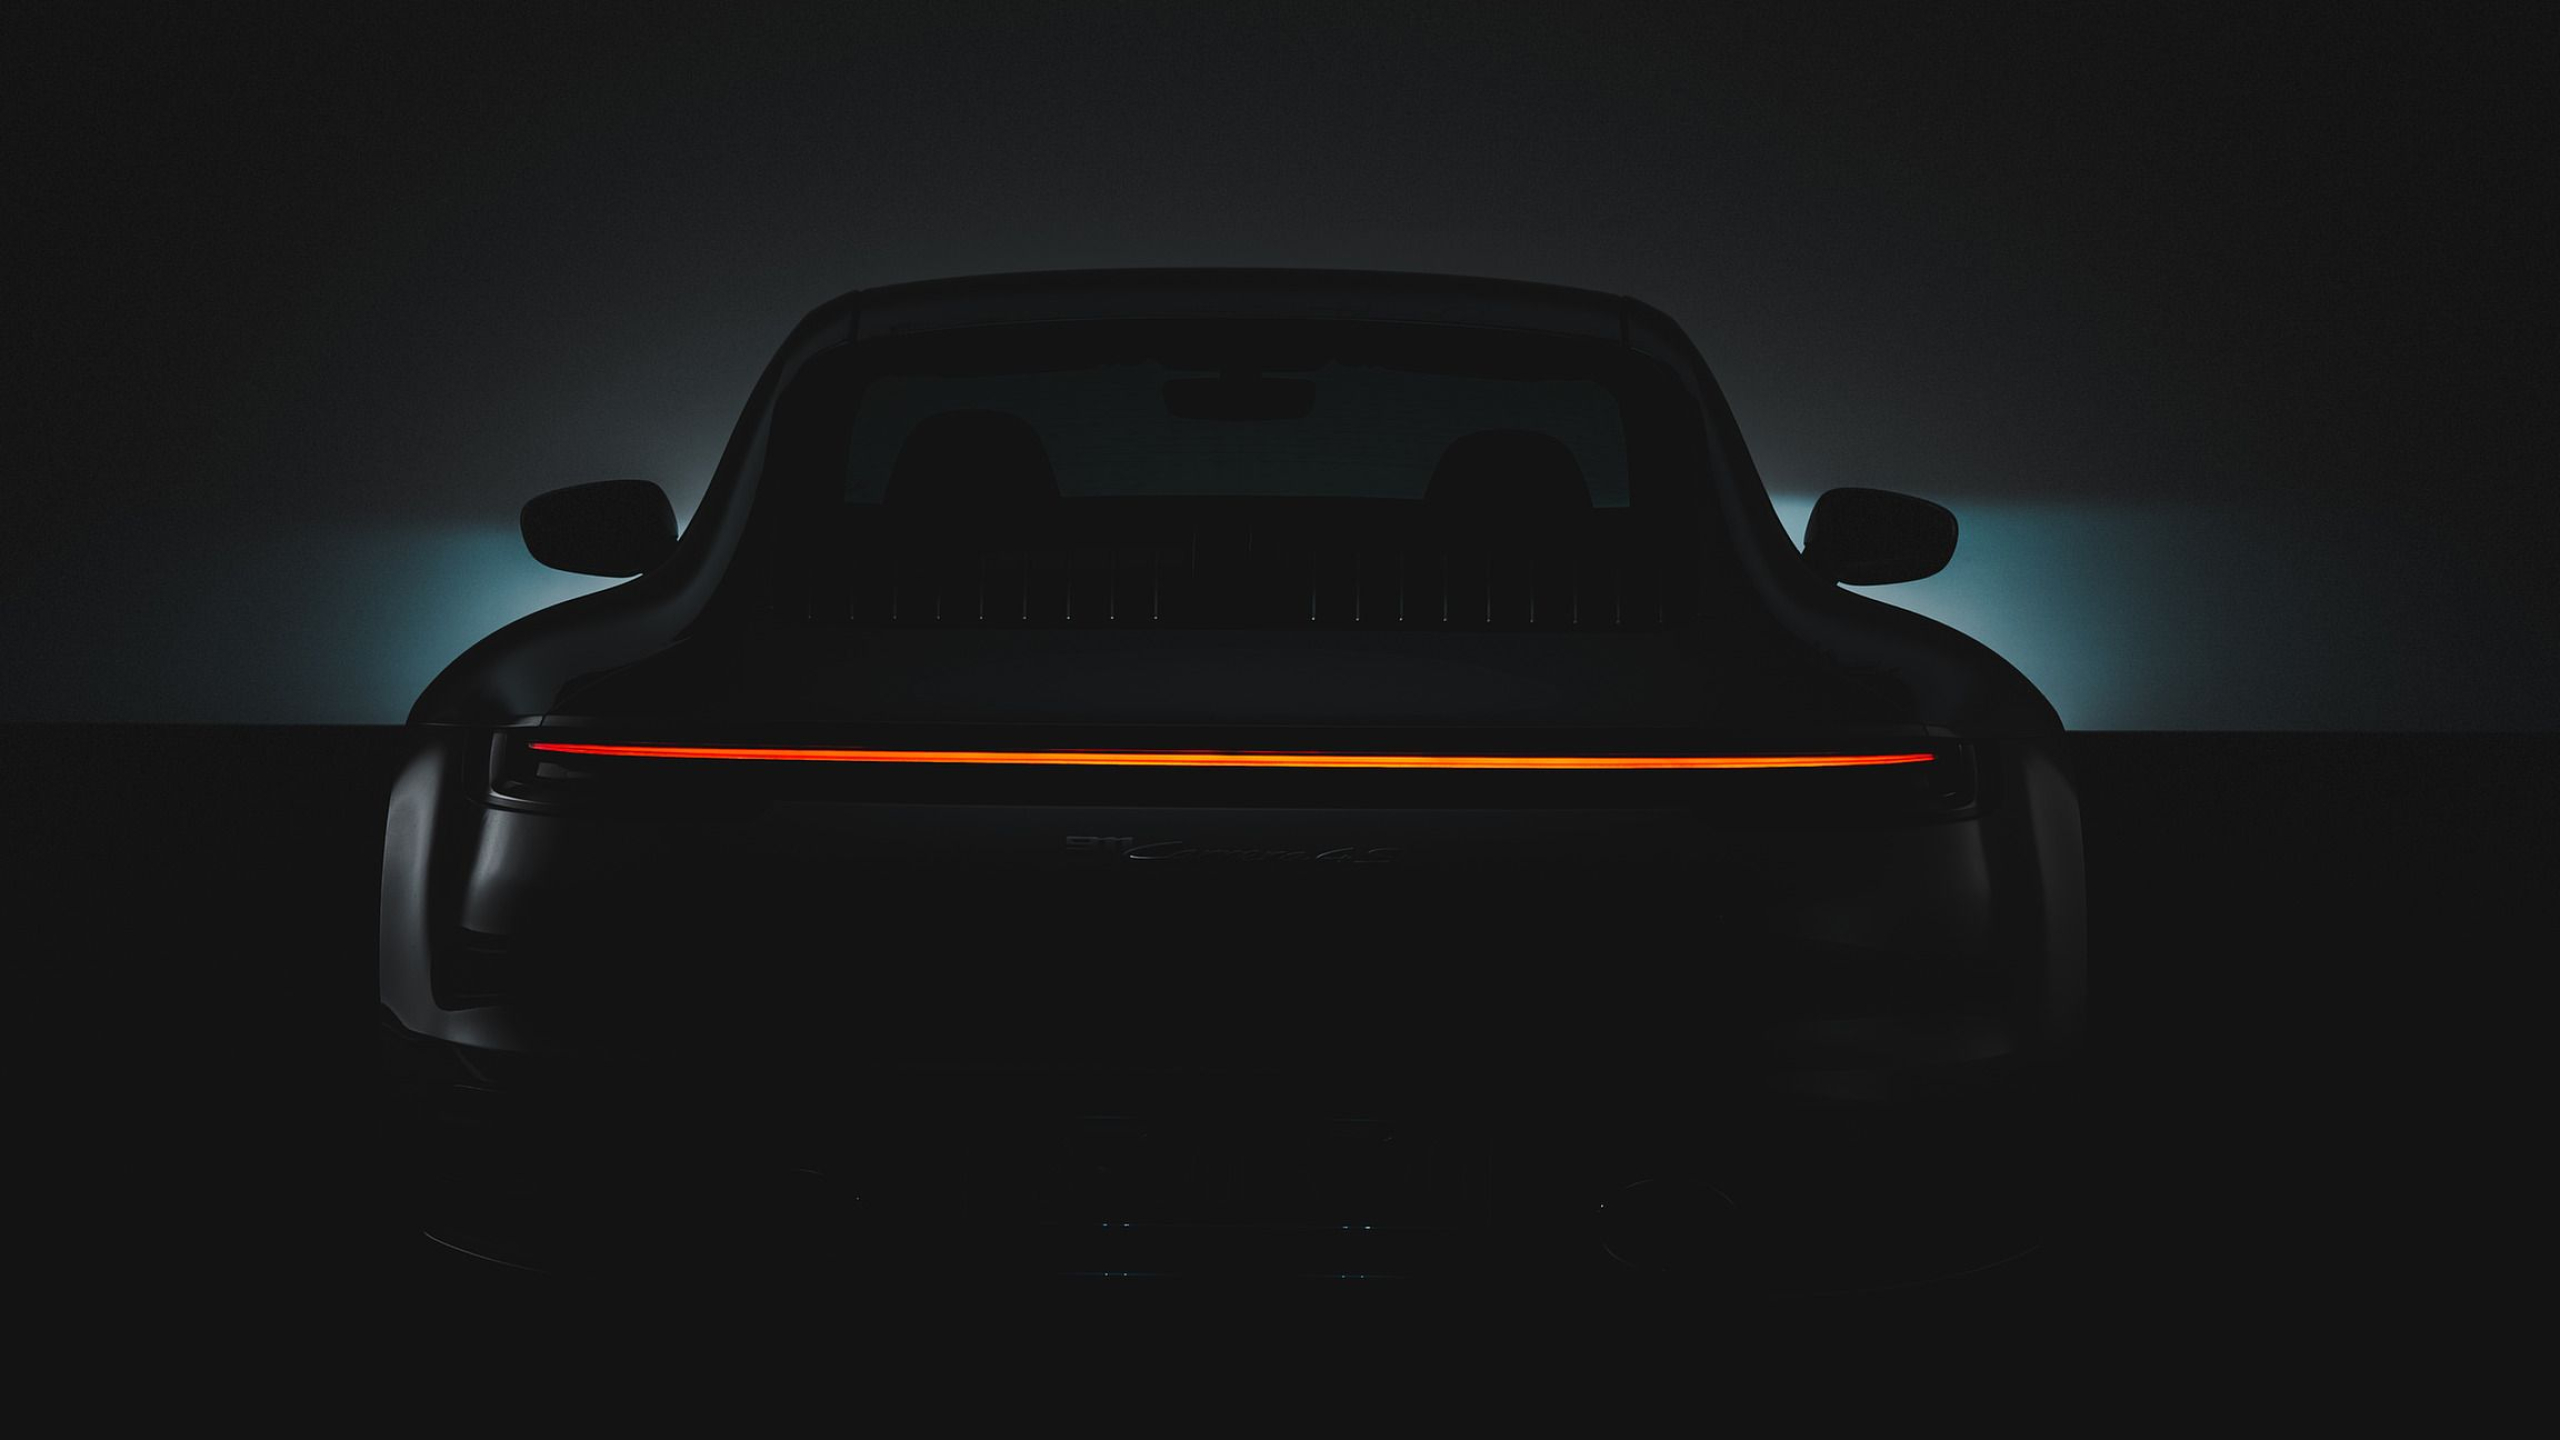 2560x1440 Porsche Light Wallpapers Top Free Porsche Light Backgrounds